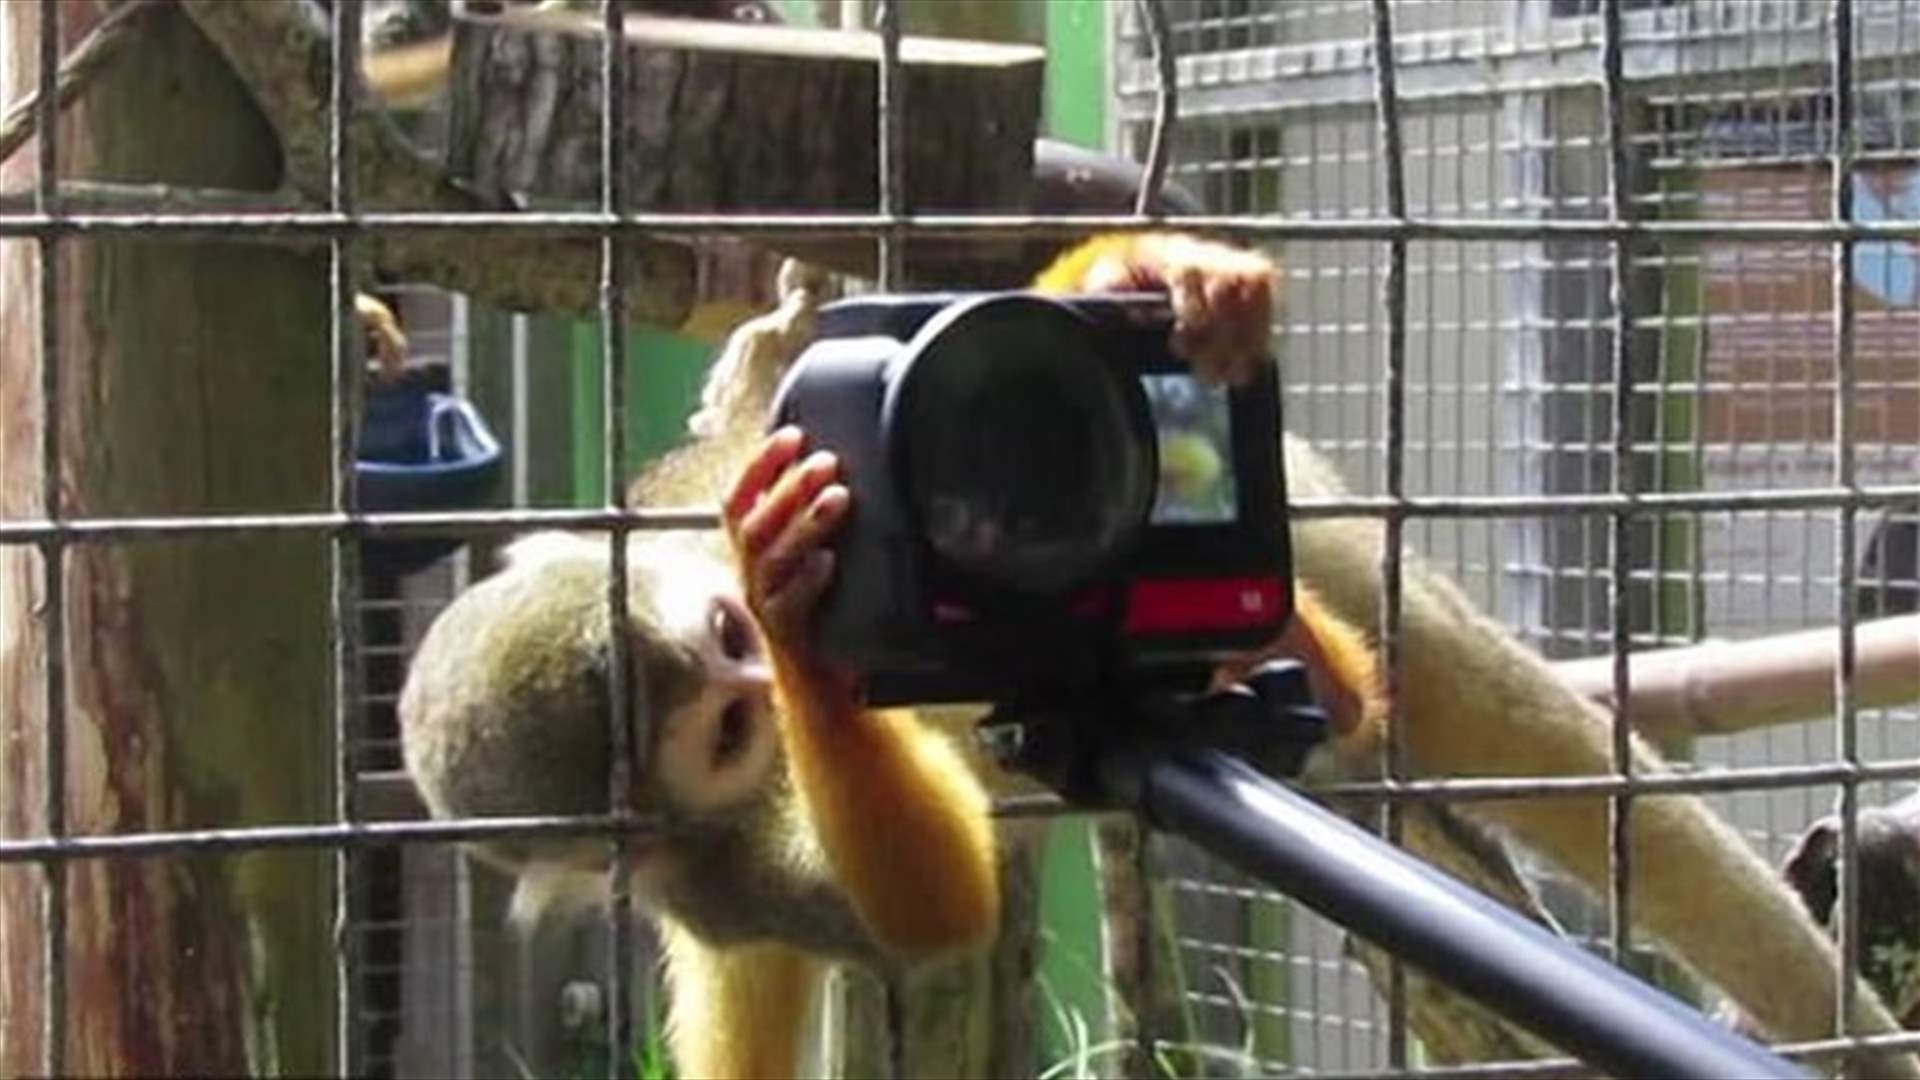 زائر حديقة حيوانات يتعرّض لموقف طريف... قرد أمسك بكاميرته الخاصة! (فيديو)